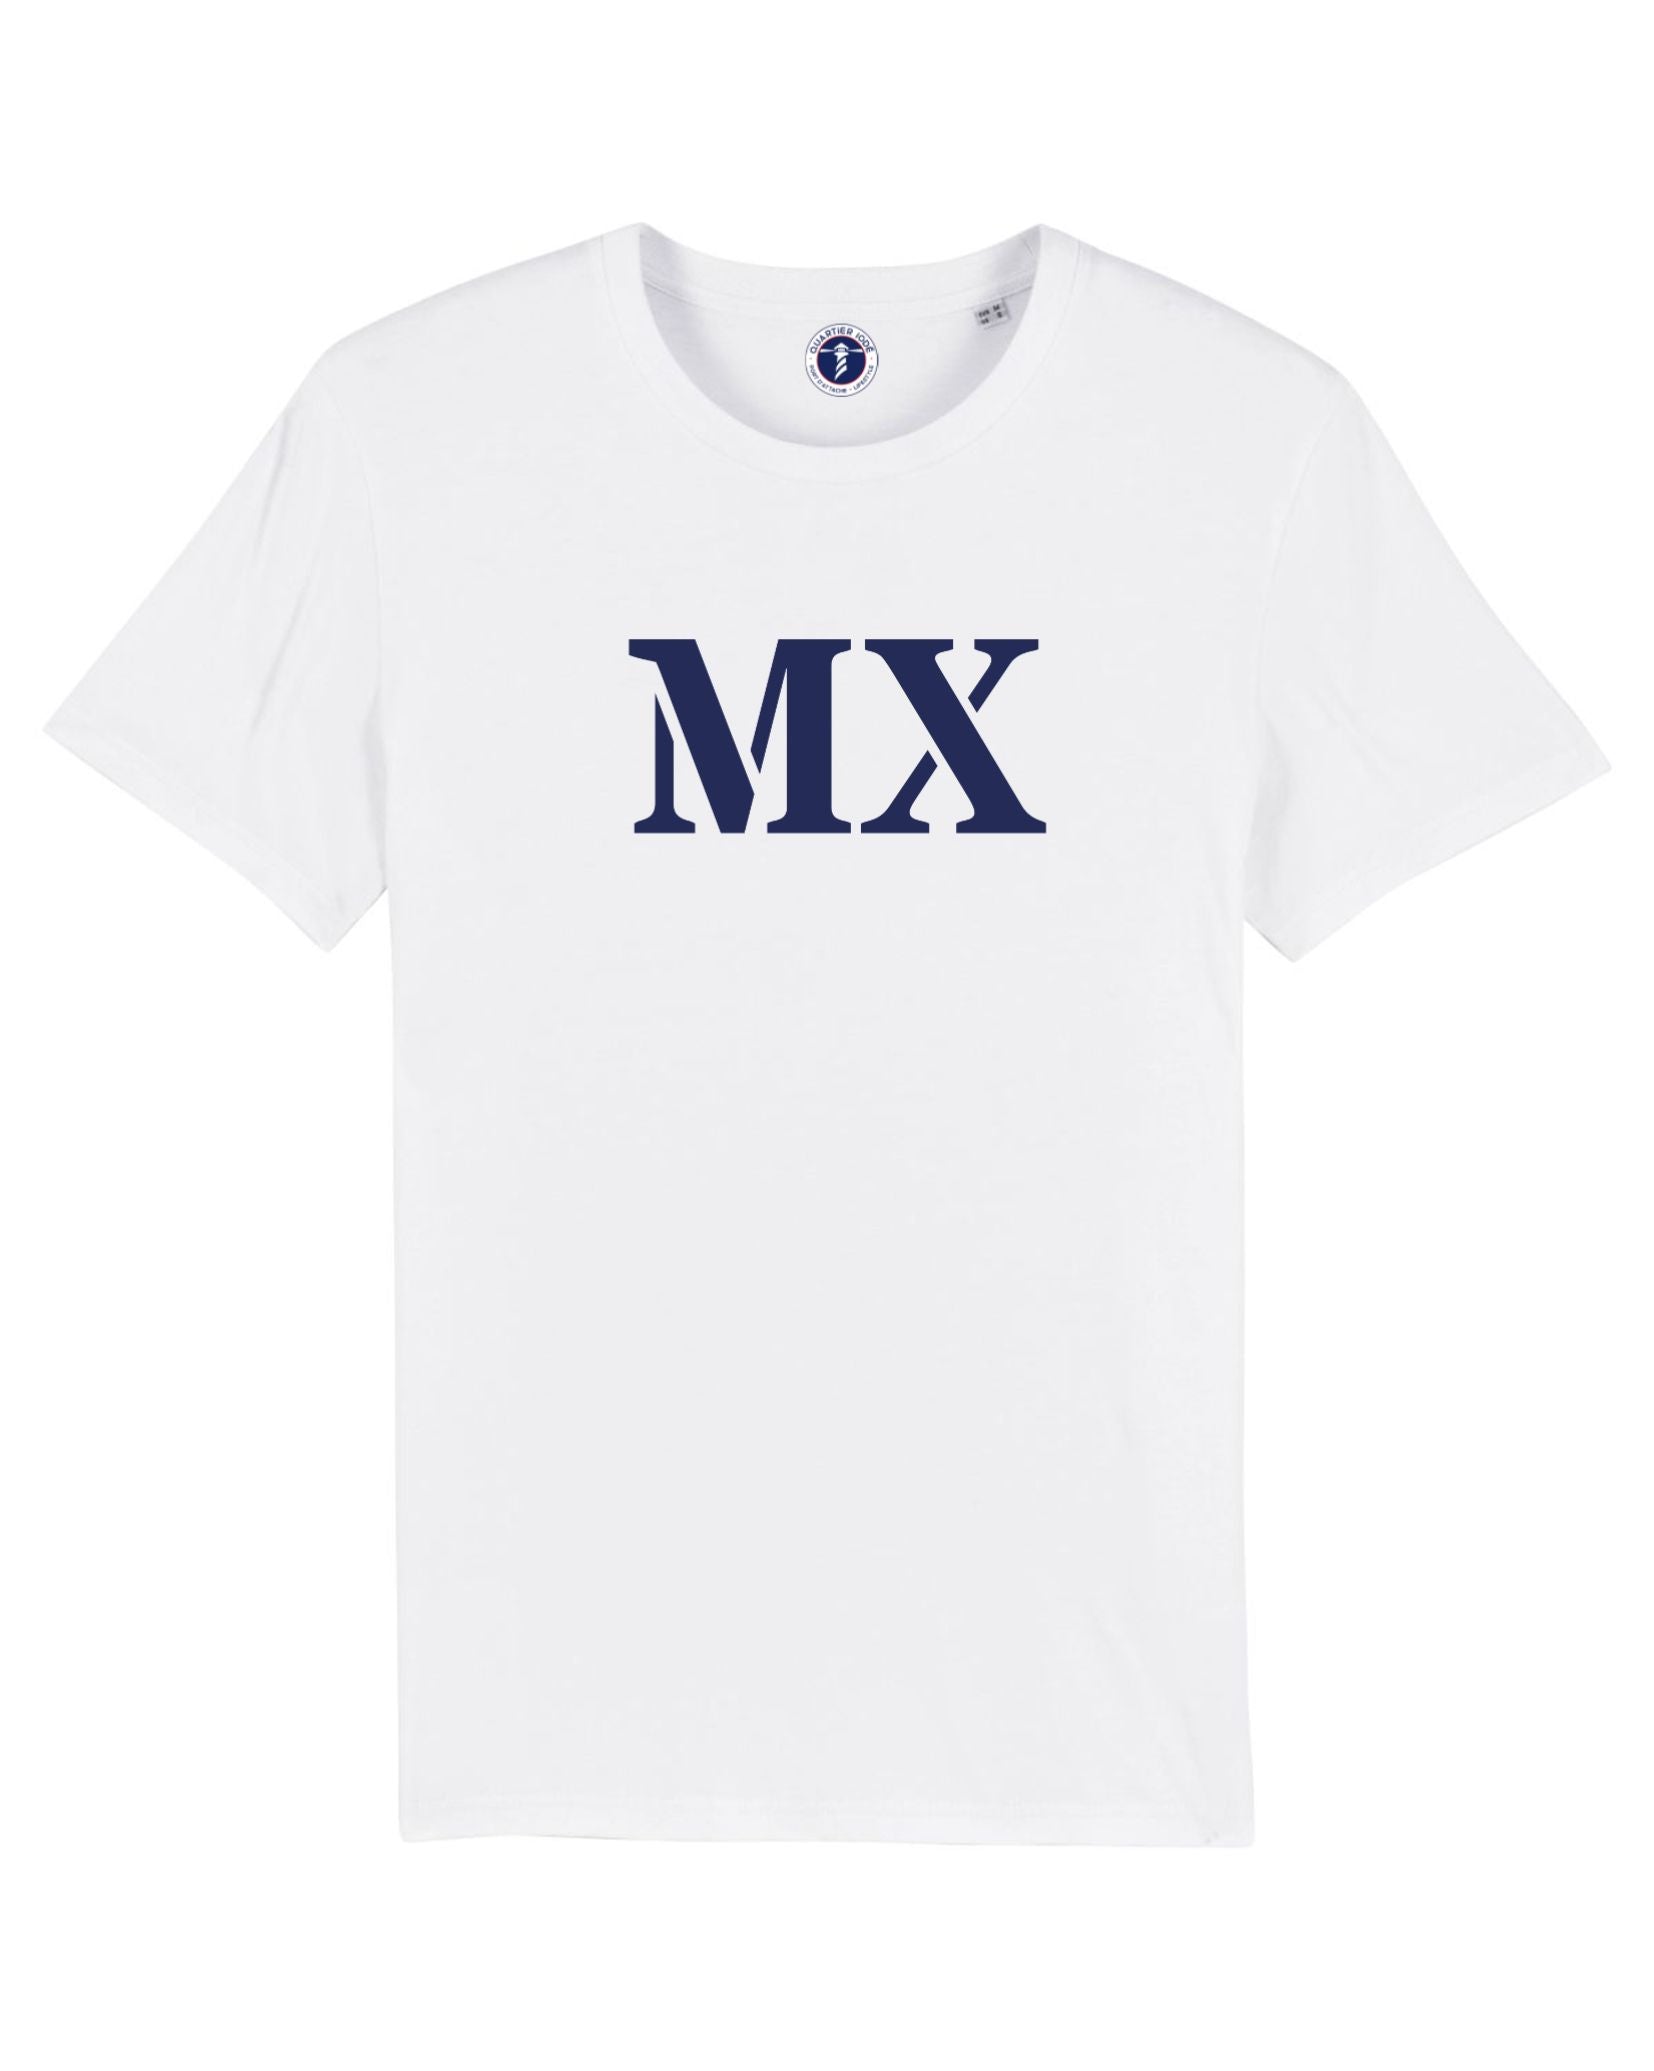 Morlaix, MX, à l'honneur sur ce Tshirt pour ados et enfants de Quartier Iodé, marque bretonne de vêtements décontractés.